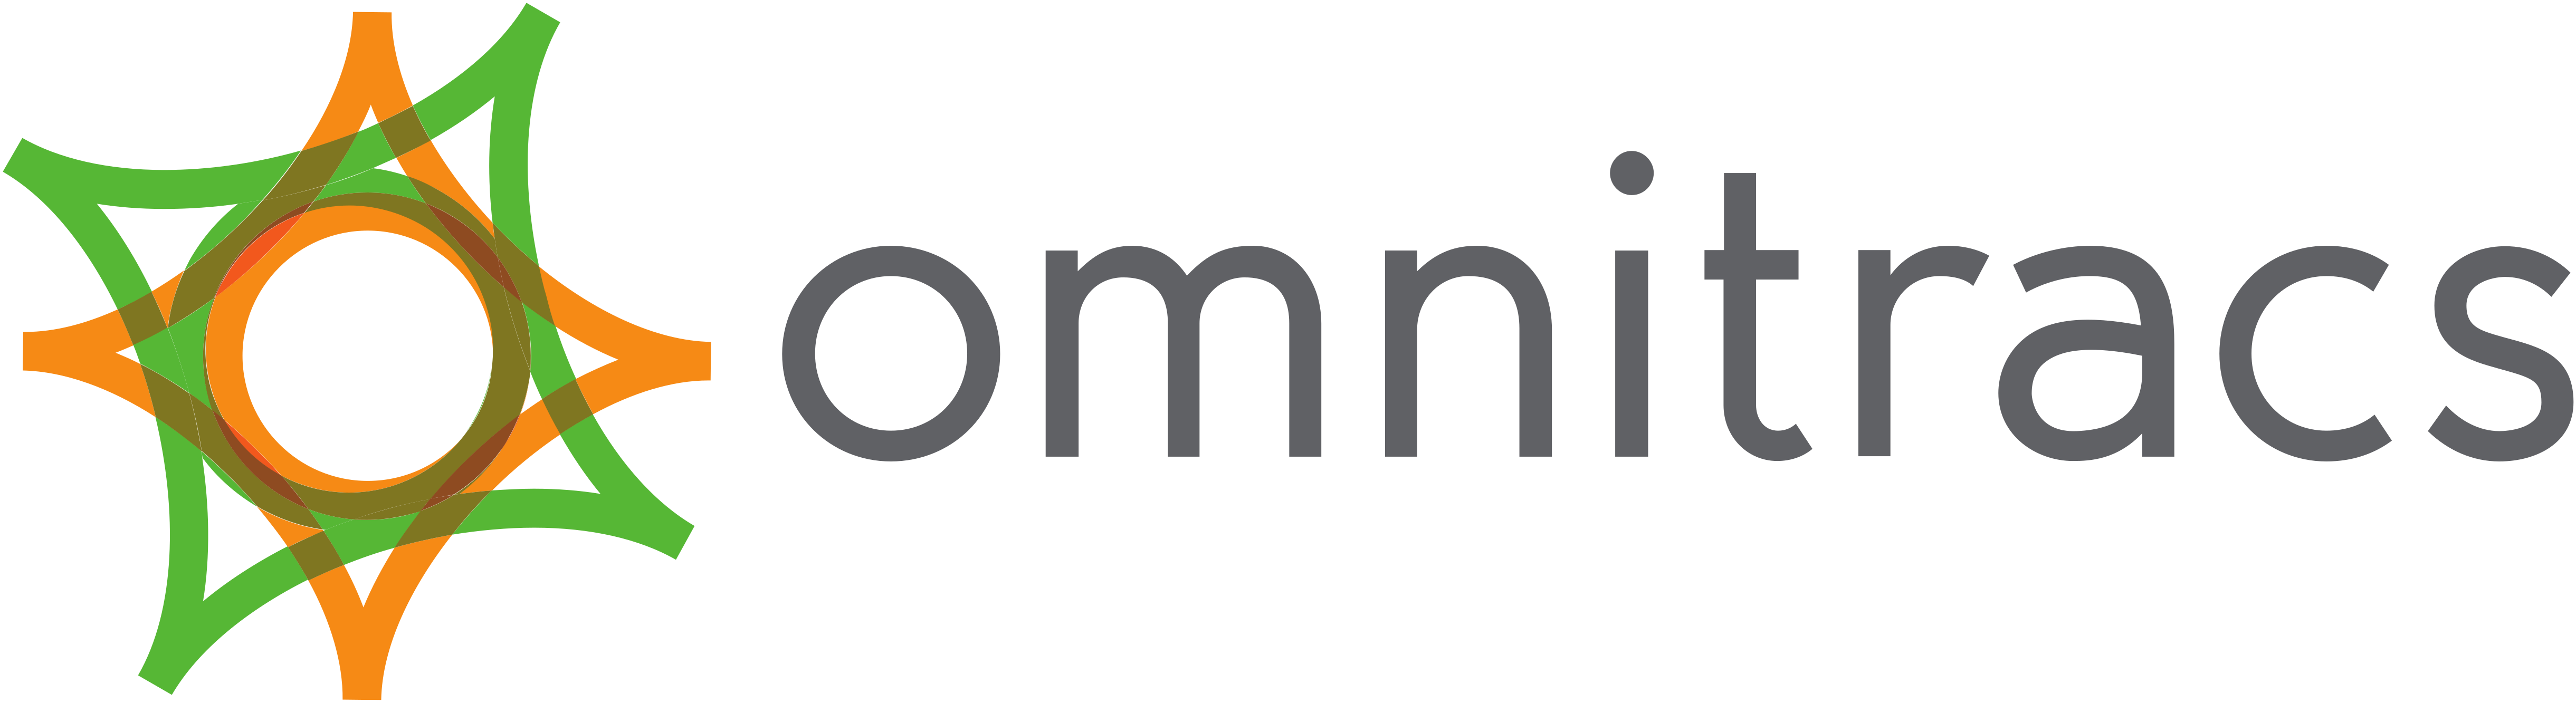 Logo_Omnitracs_202005_Horizontal_CMYK_Standard